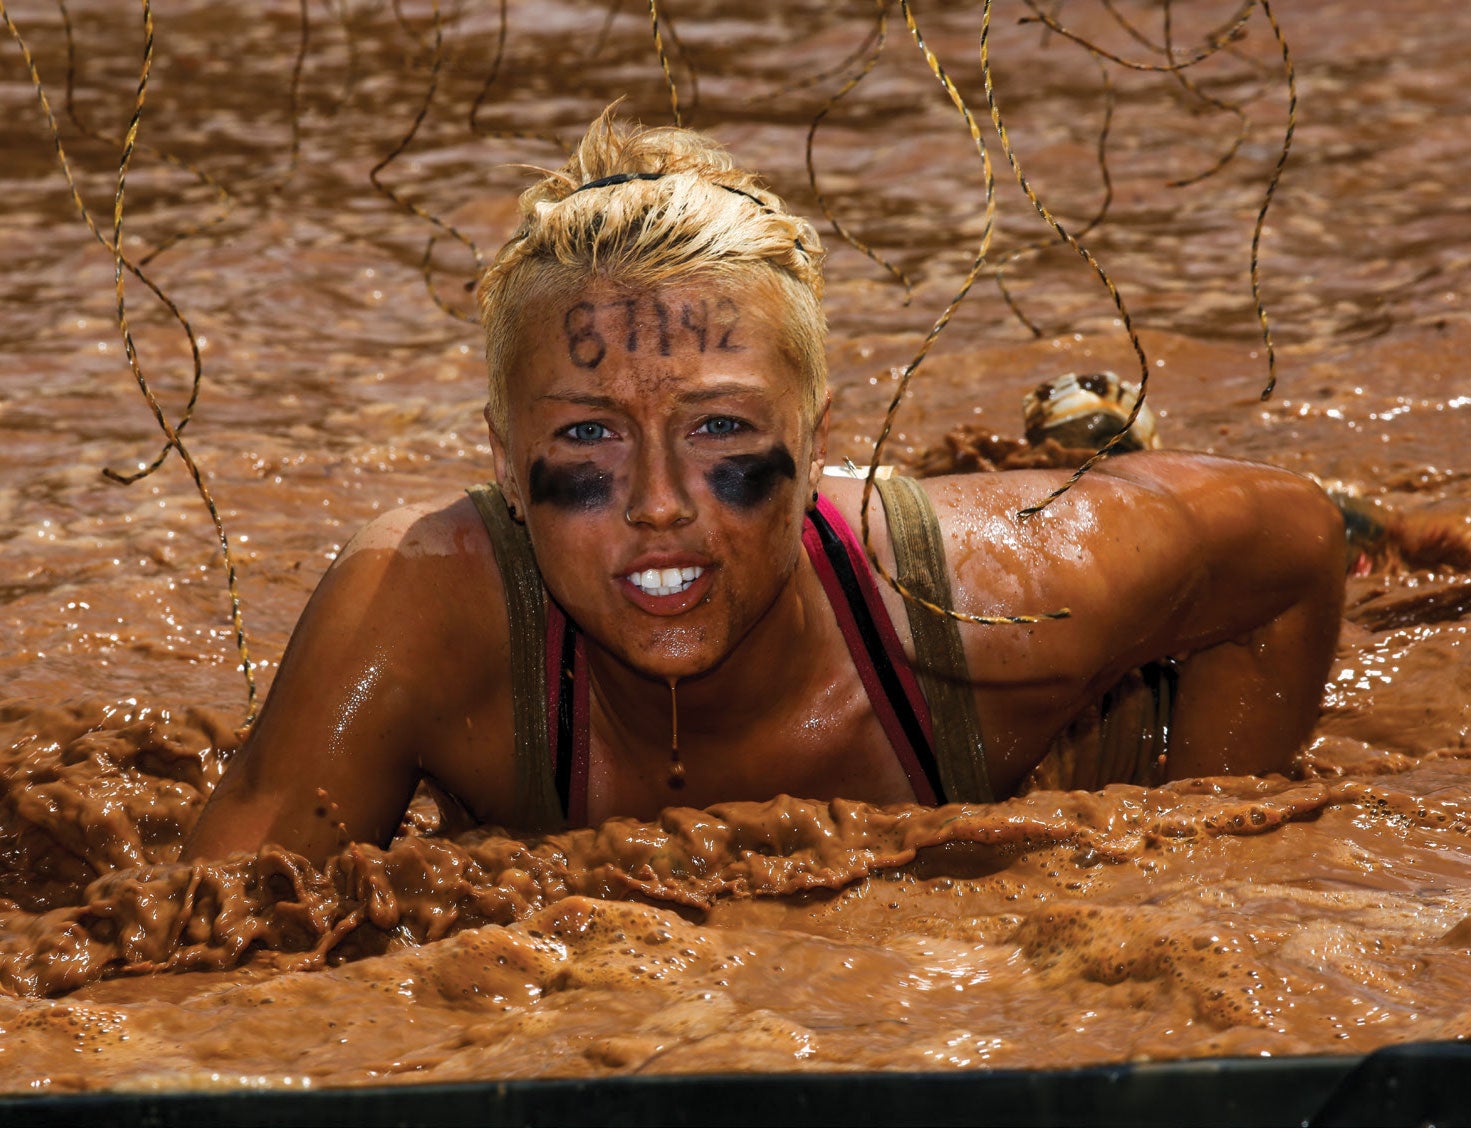 https://cdn.womensrunning.com/wp-content/uploads/2013/11/Mud-race.jpg